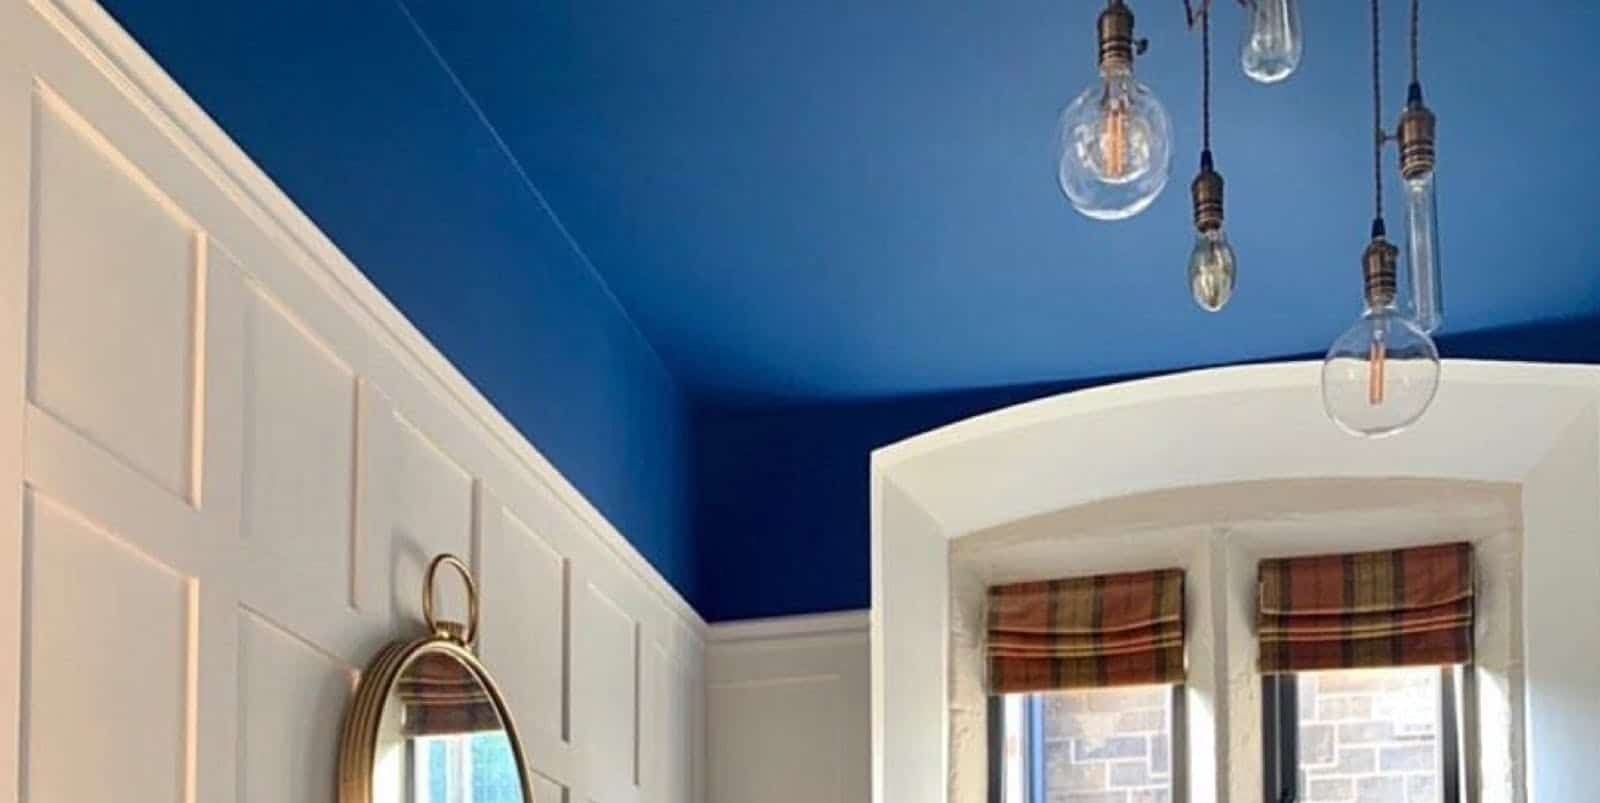 comment peindre plafond facilement rapidement